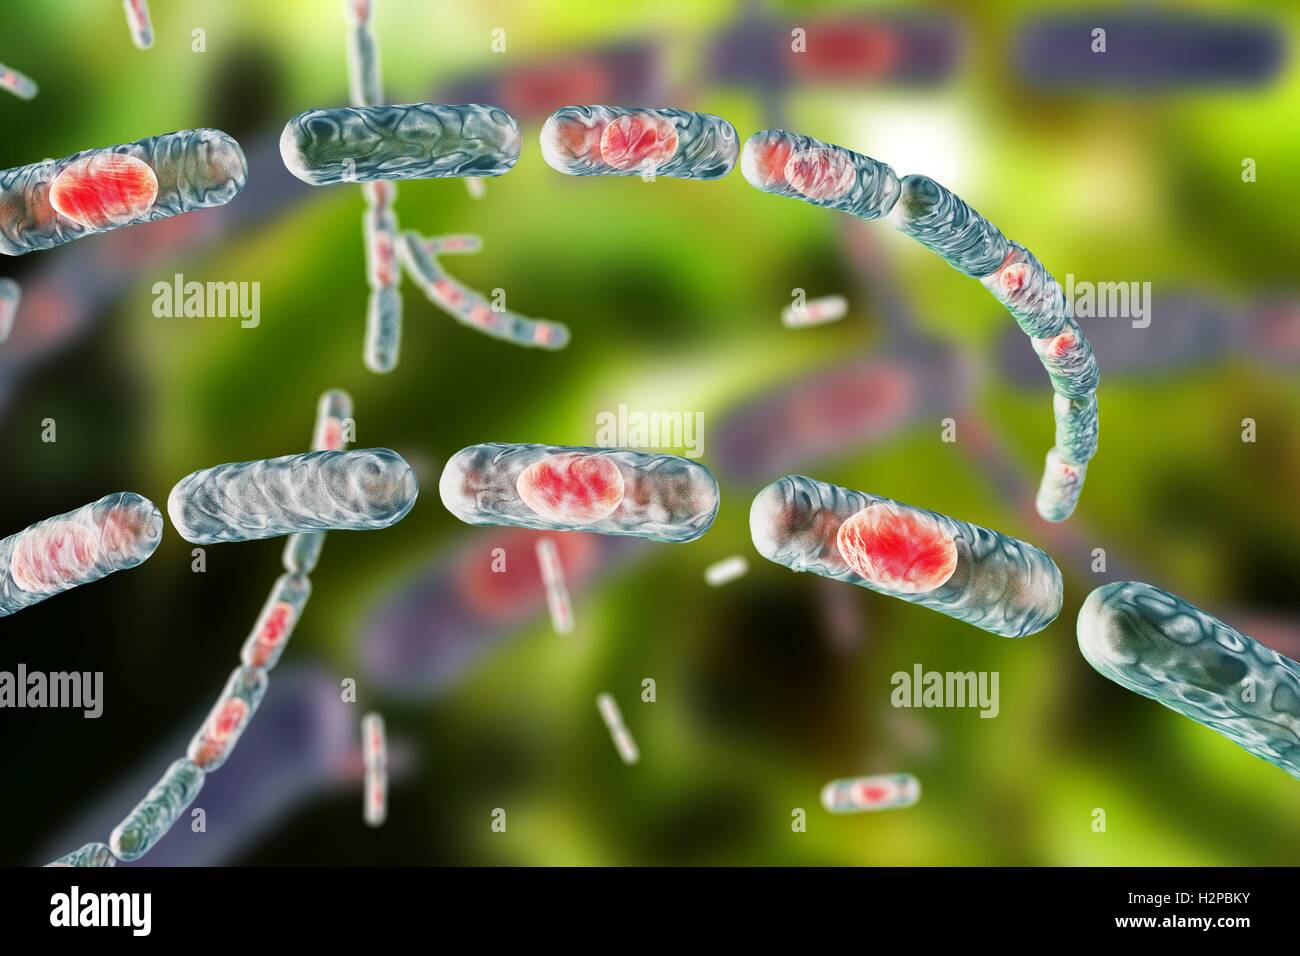 La bactérie du charbon, illustration de l'ordinateur. La bactérie du charbon (Bacillus anthracis) sont la cause de la maladie de l'anthrax dans l'homme et le bétail. Ils sont Gram positif bactéries productrices de spores disposées en chaînes (streptobacilli). De nombreuses cellules ont un spore (rouge). Banque D'Images